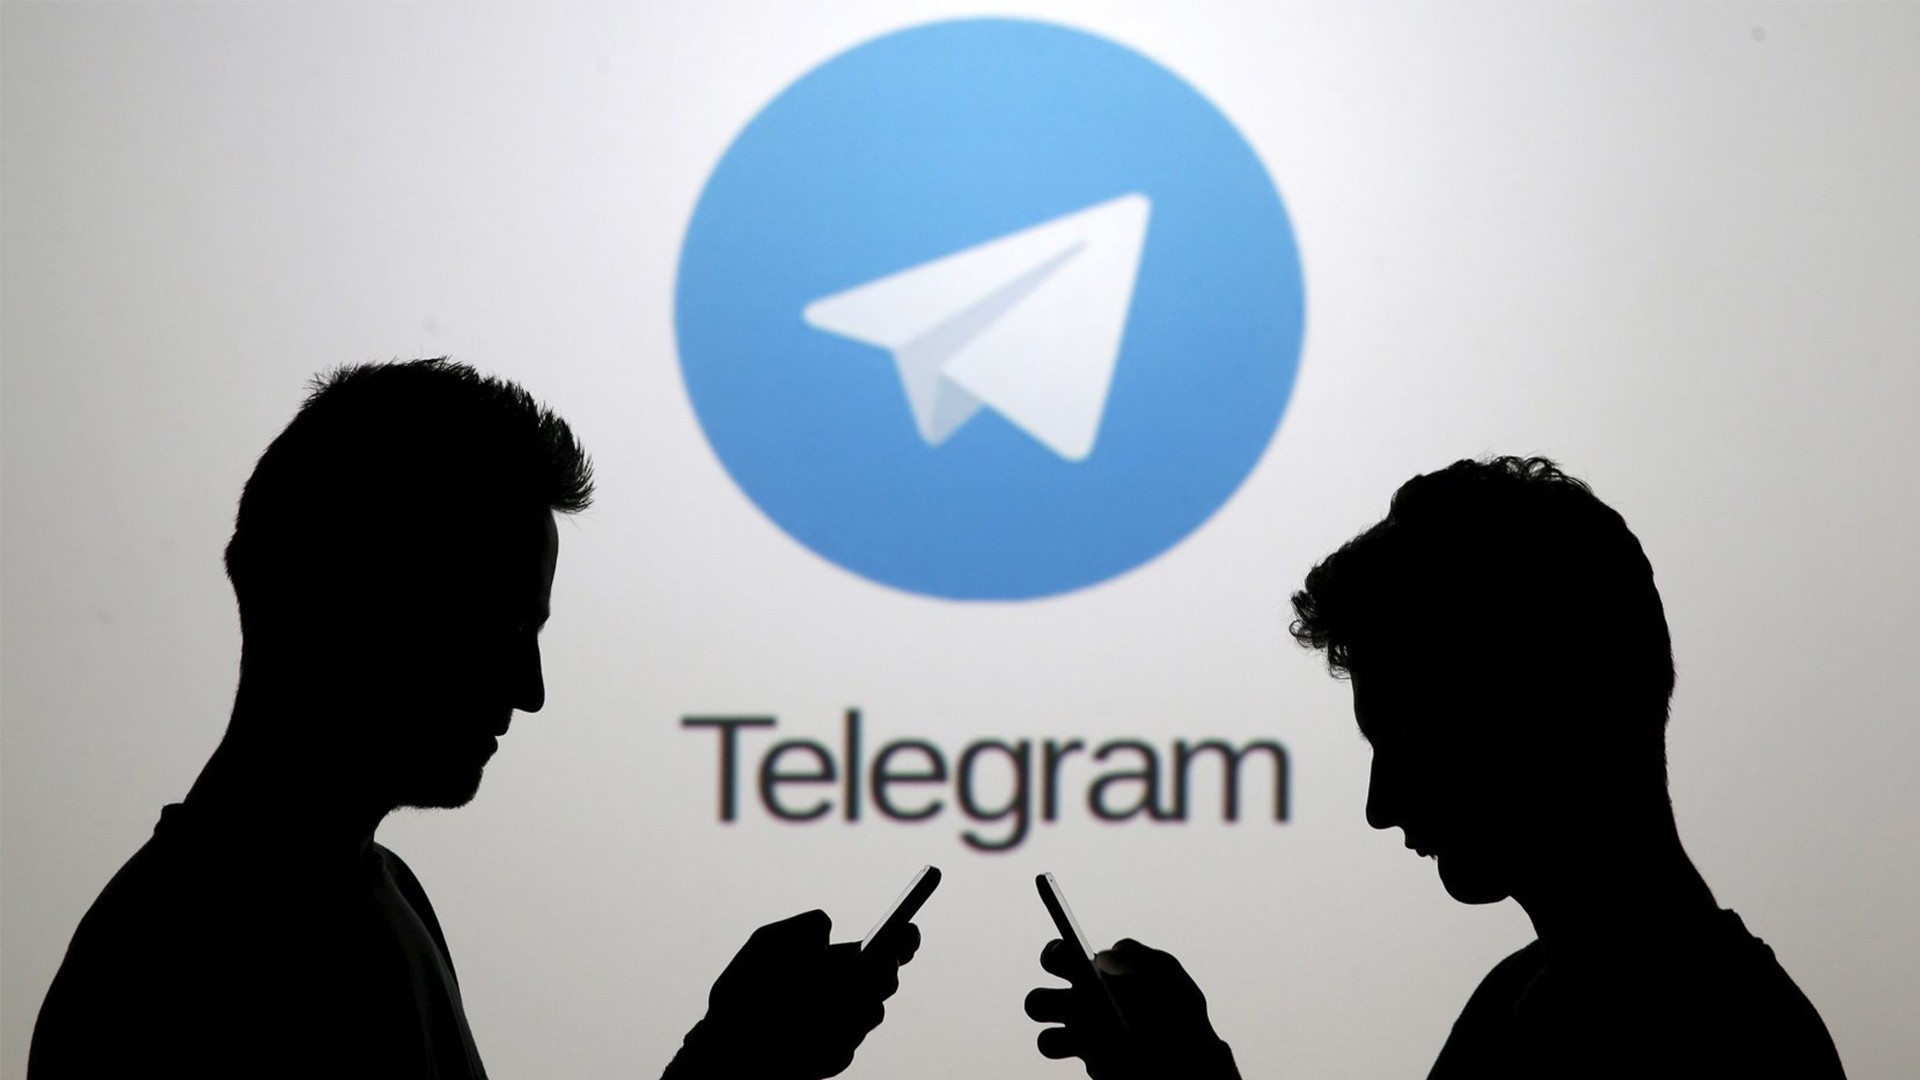 Разведка Бельгии заявила об активности террористов в Telegram